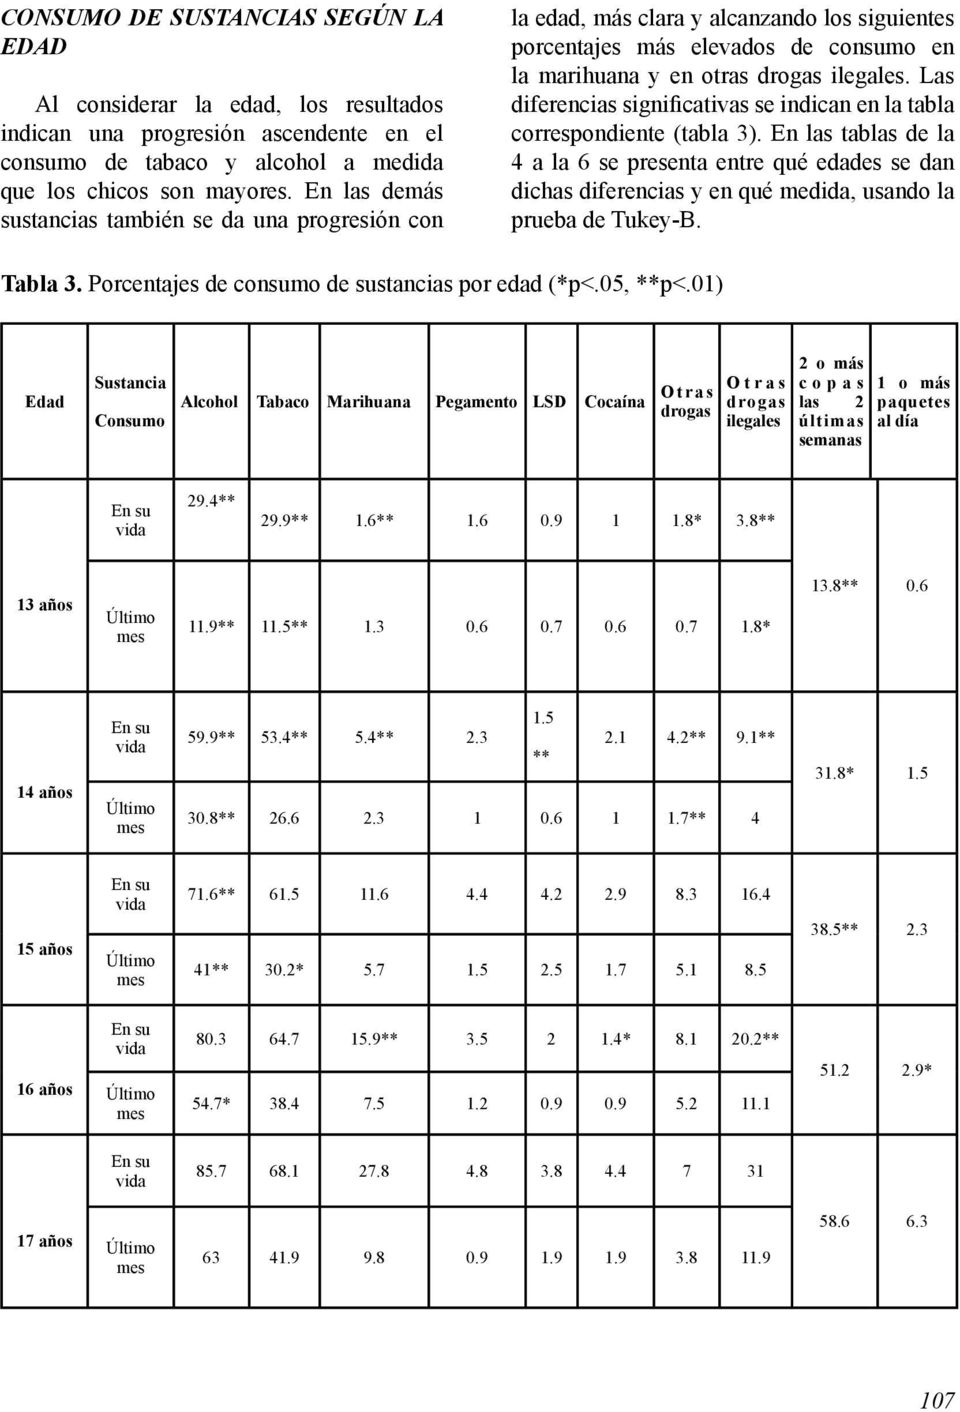 Las diferencias significativas se indican en la tabla correspondiente (tabla 3).